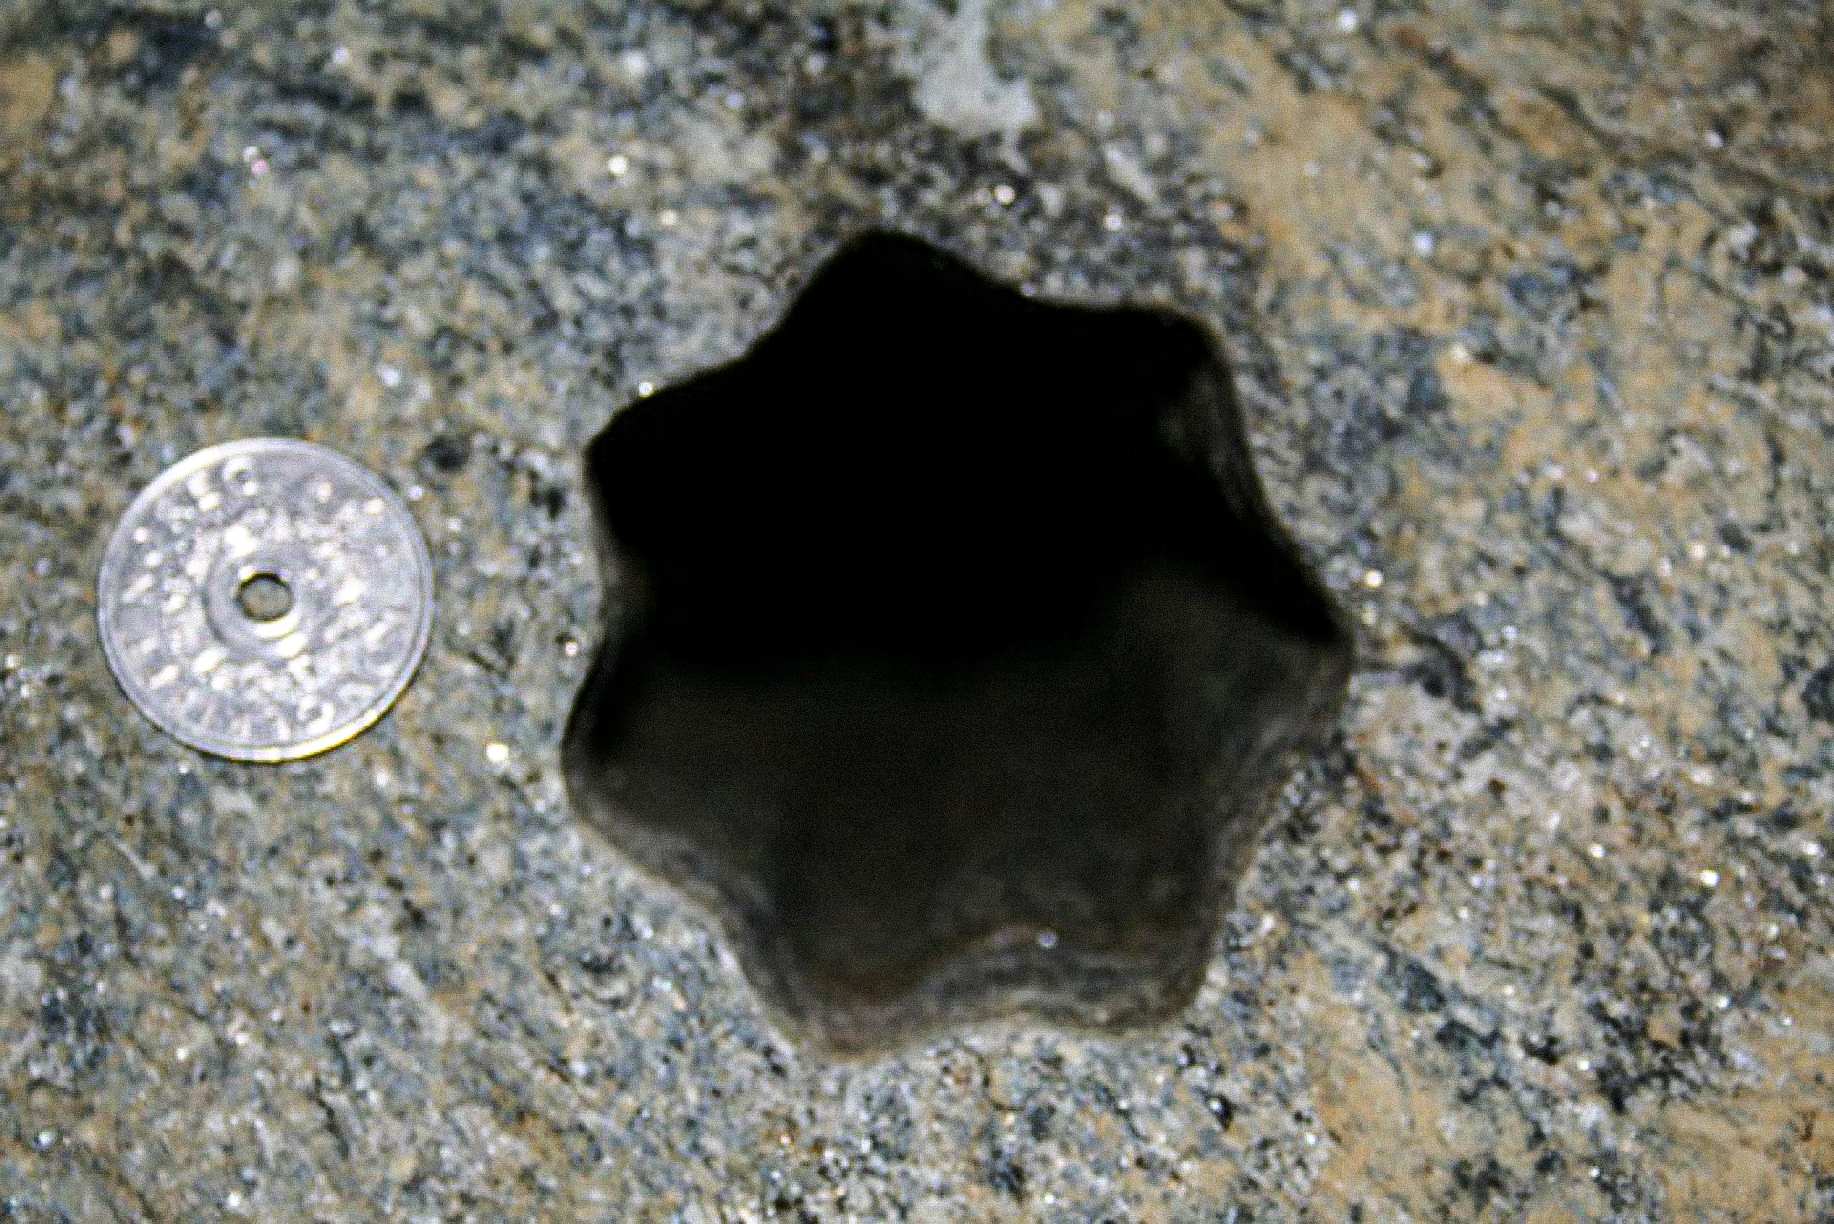 Bu yıldız şeklindeki delik (yedi kenarlı) müteahhitler tarafından 30 Kasım 2007 Cuma günü Volda, Norveç'te bulundu.Norveç 5 - kroner madeni para 25 mm çapındadır. Delik yaklaşık 65 - 70 mm çapındadır.